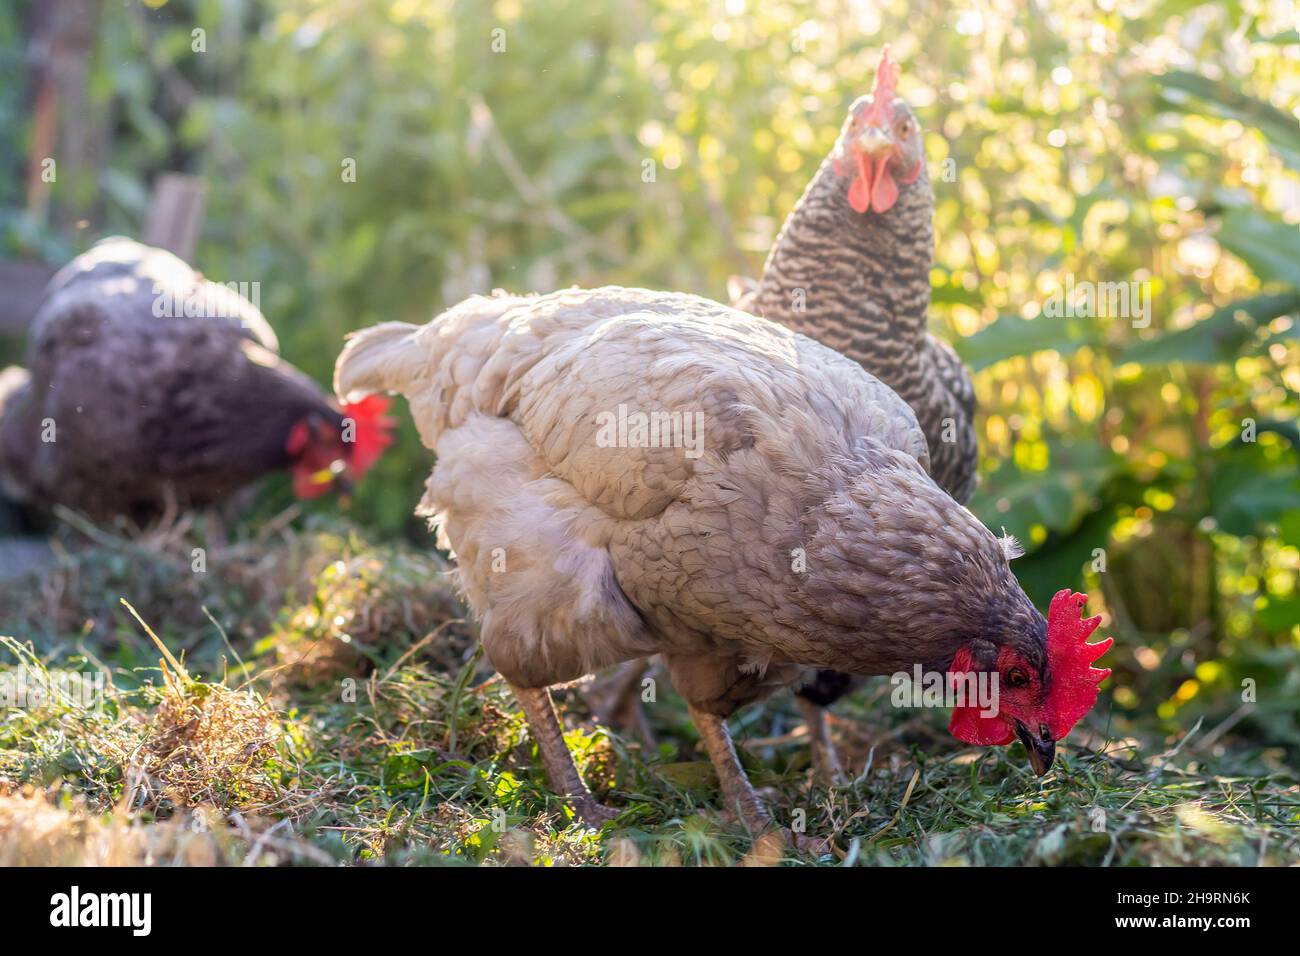 Gallinas de la gama libre - gallina azul y gris-coloreada en el jardín Foto de stock